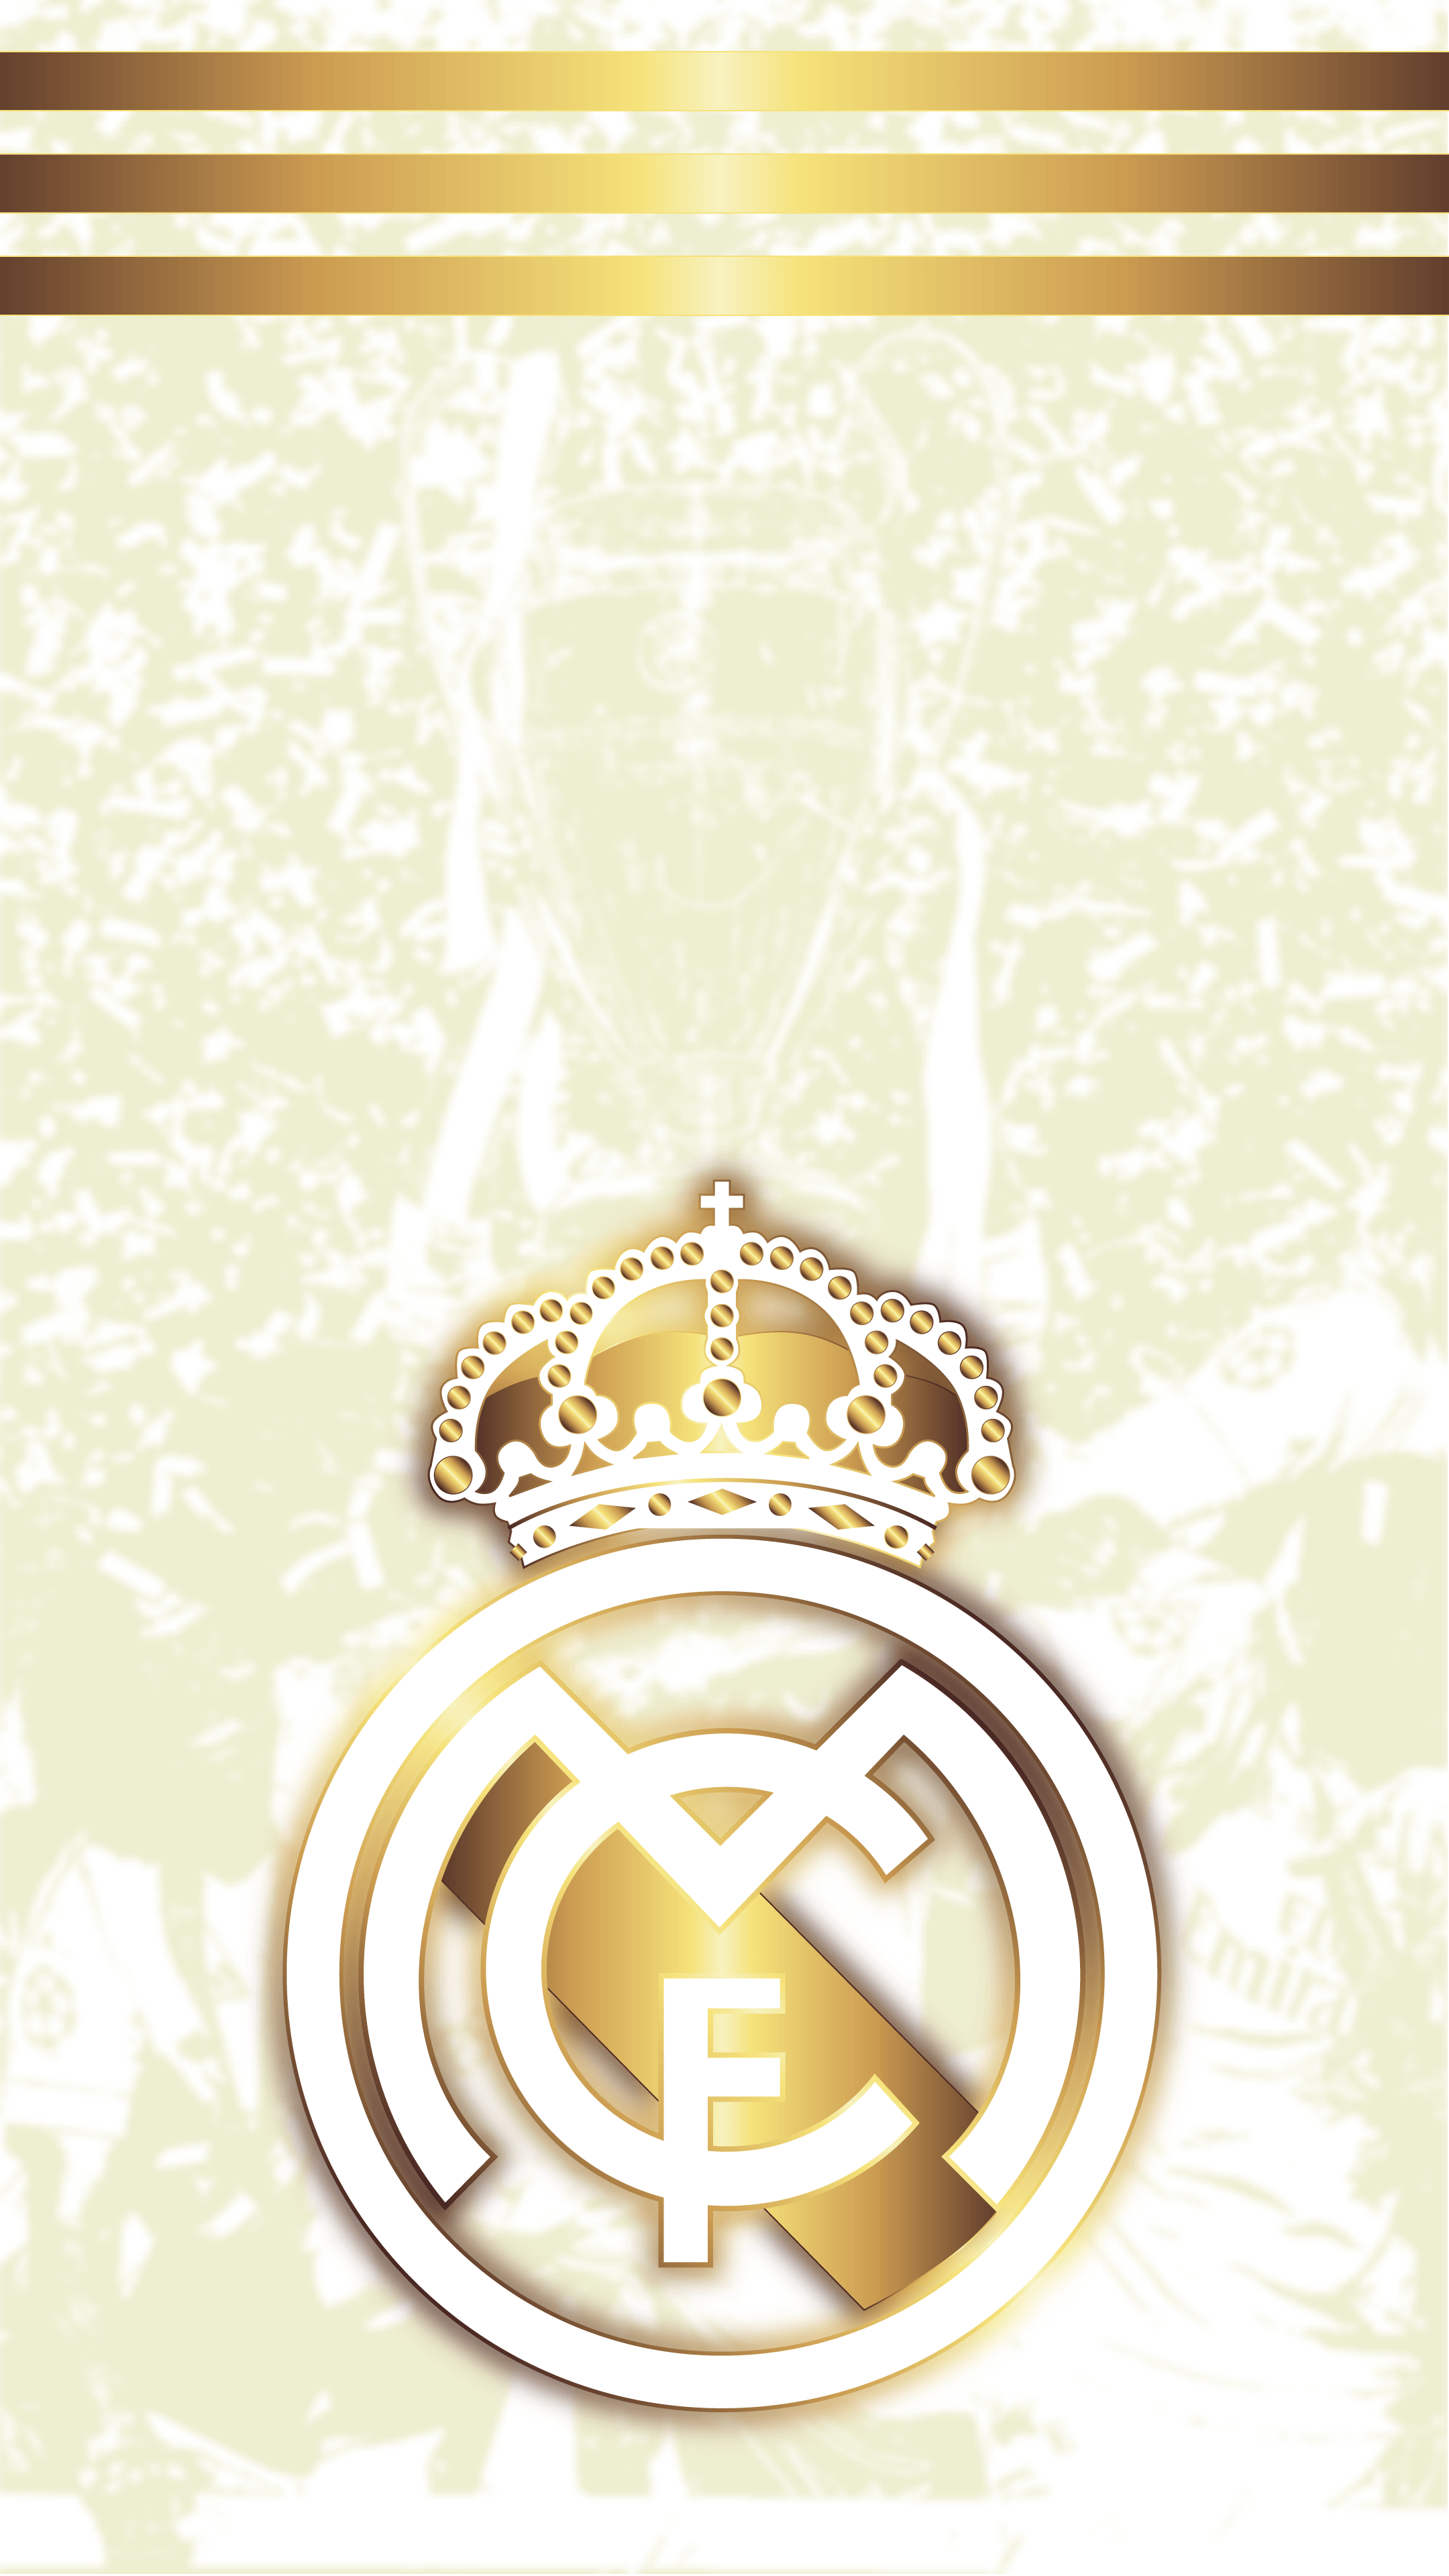 Real Madrid 2019/20 Wallpapers - Álbum en Imgur